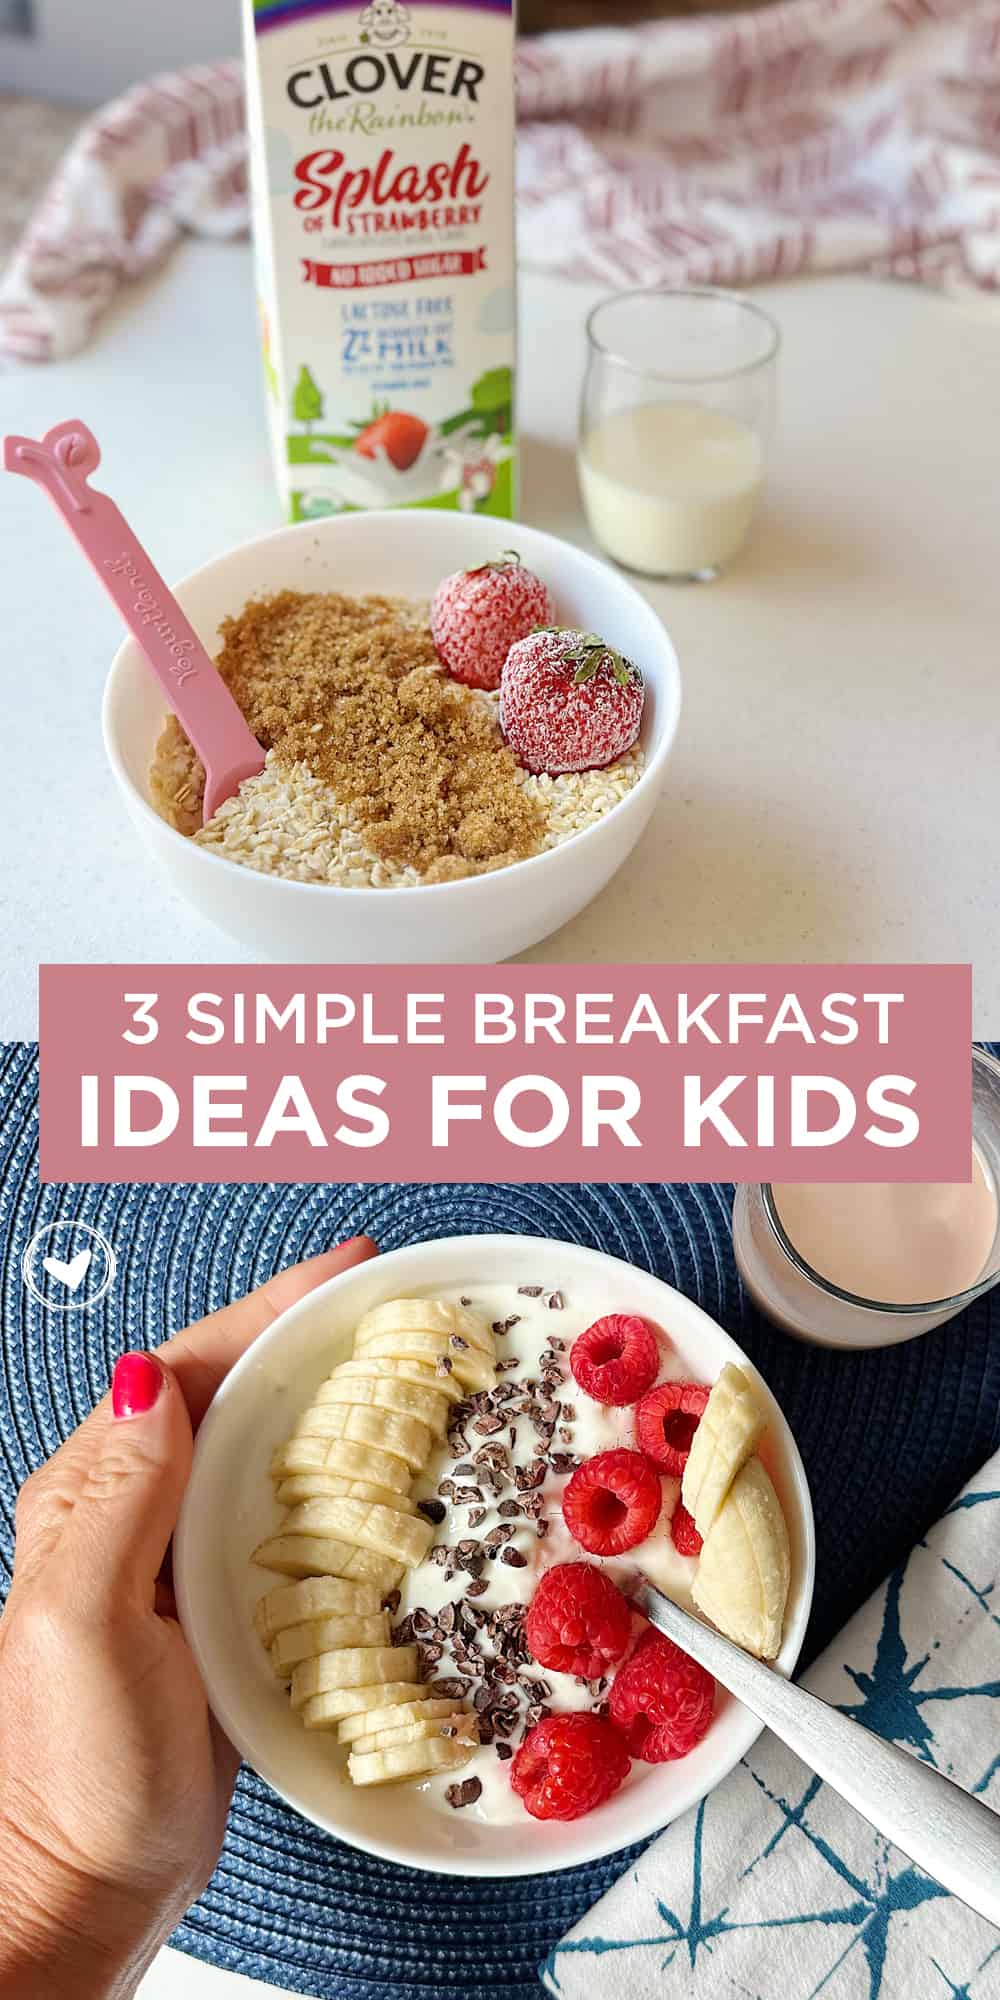 3 Simple Breakfast Ideas for Kids